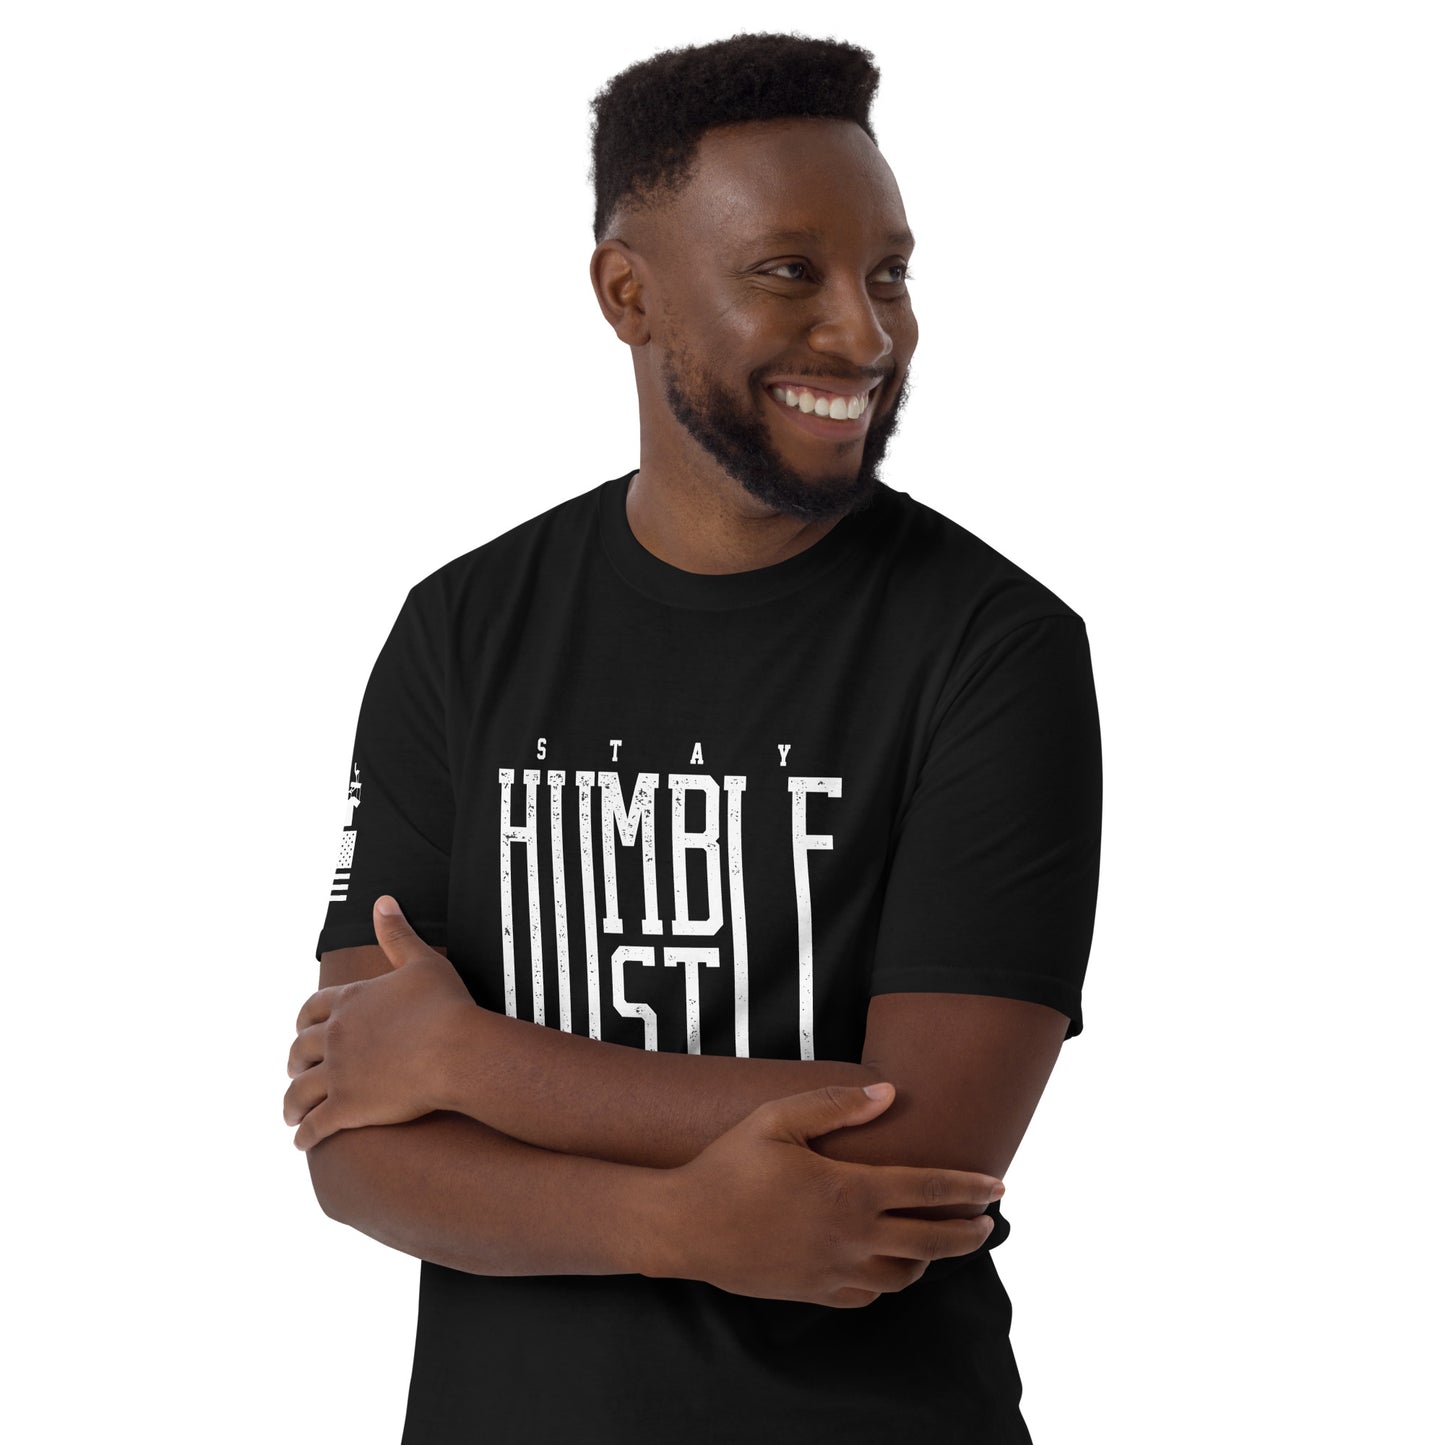 Stay Humble Hustle Hard (2) - Basic T-Shirt (unisex) | TheShirtfather